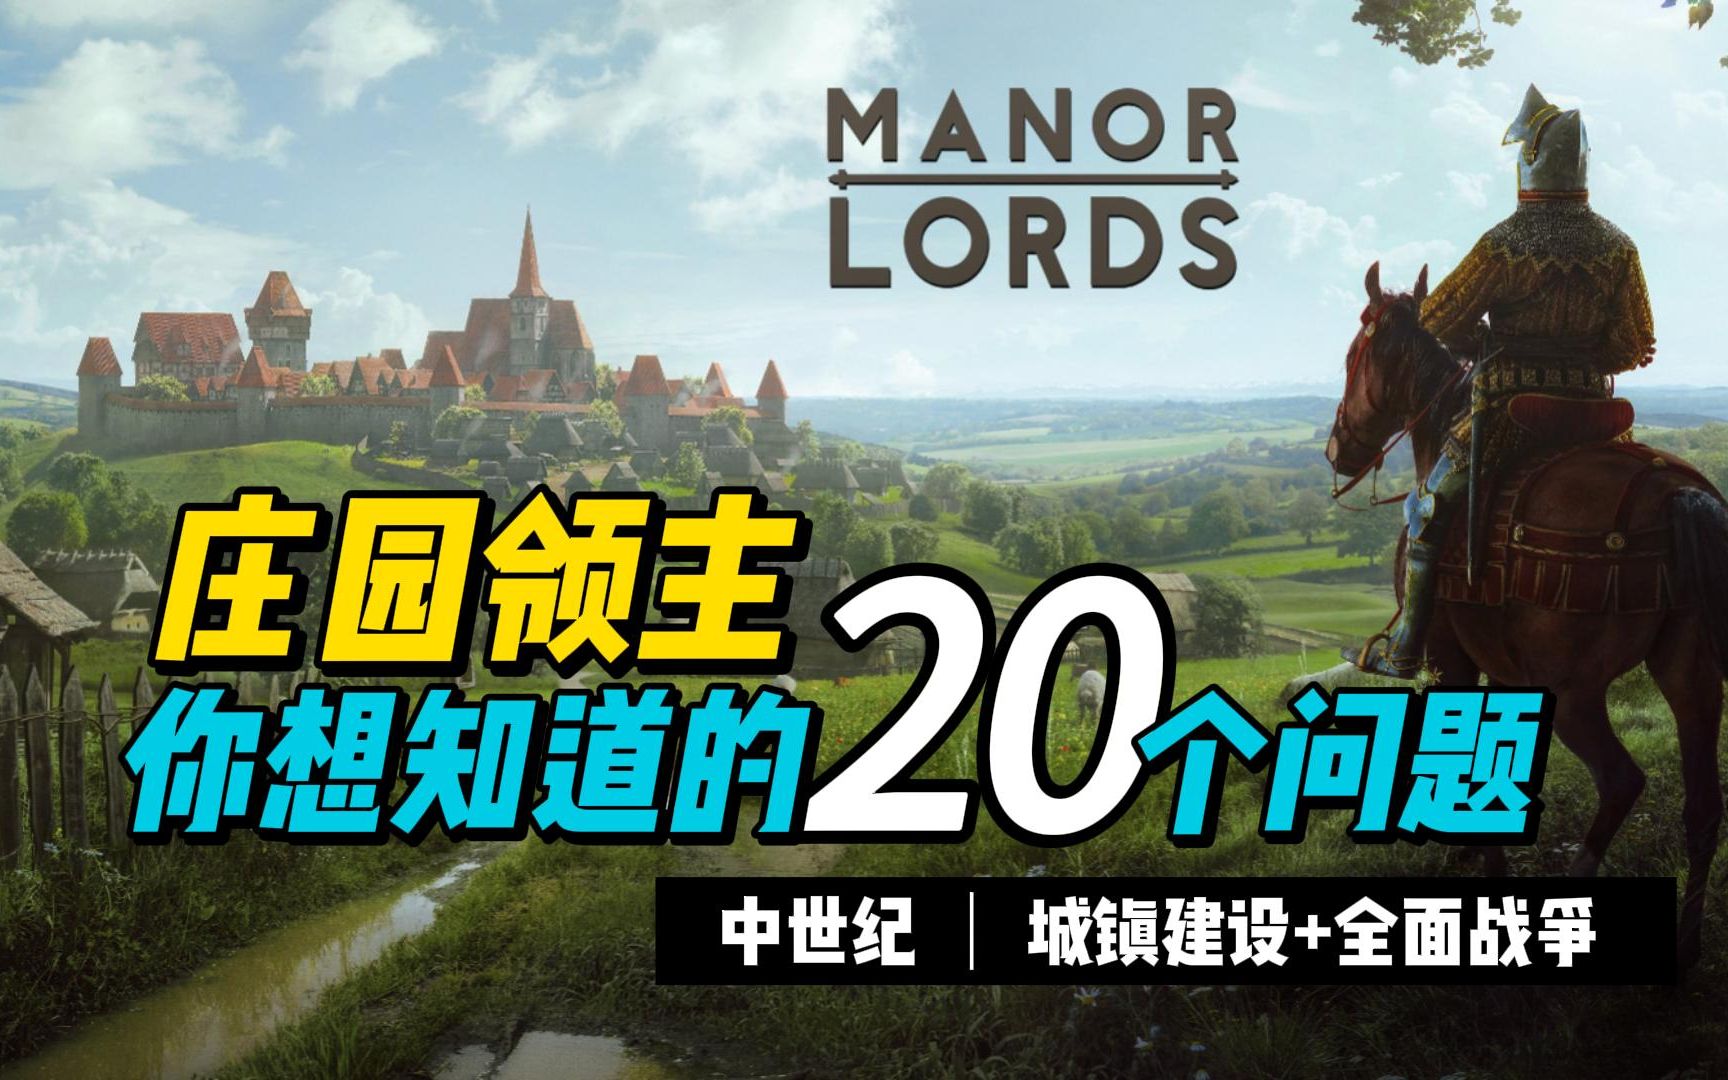 【庄园领主 Manor Lords】demo试玩，中世纪骑砍还是刁民模拟器？